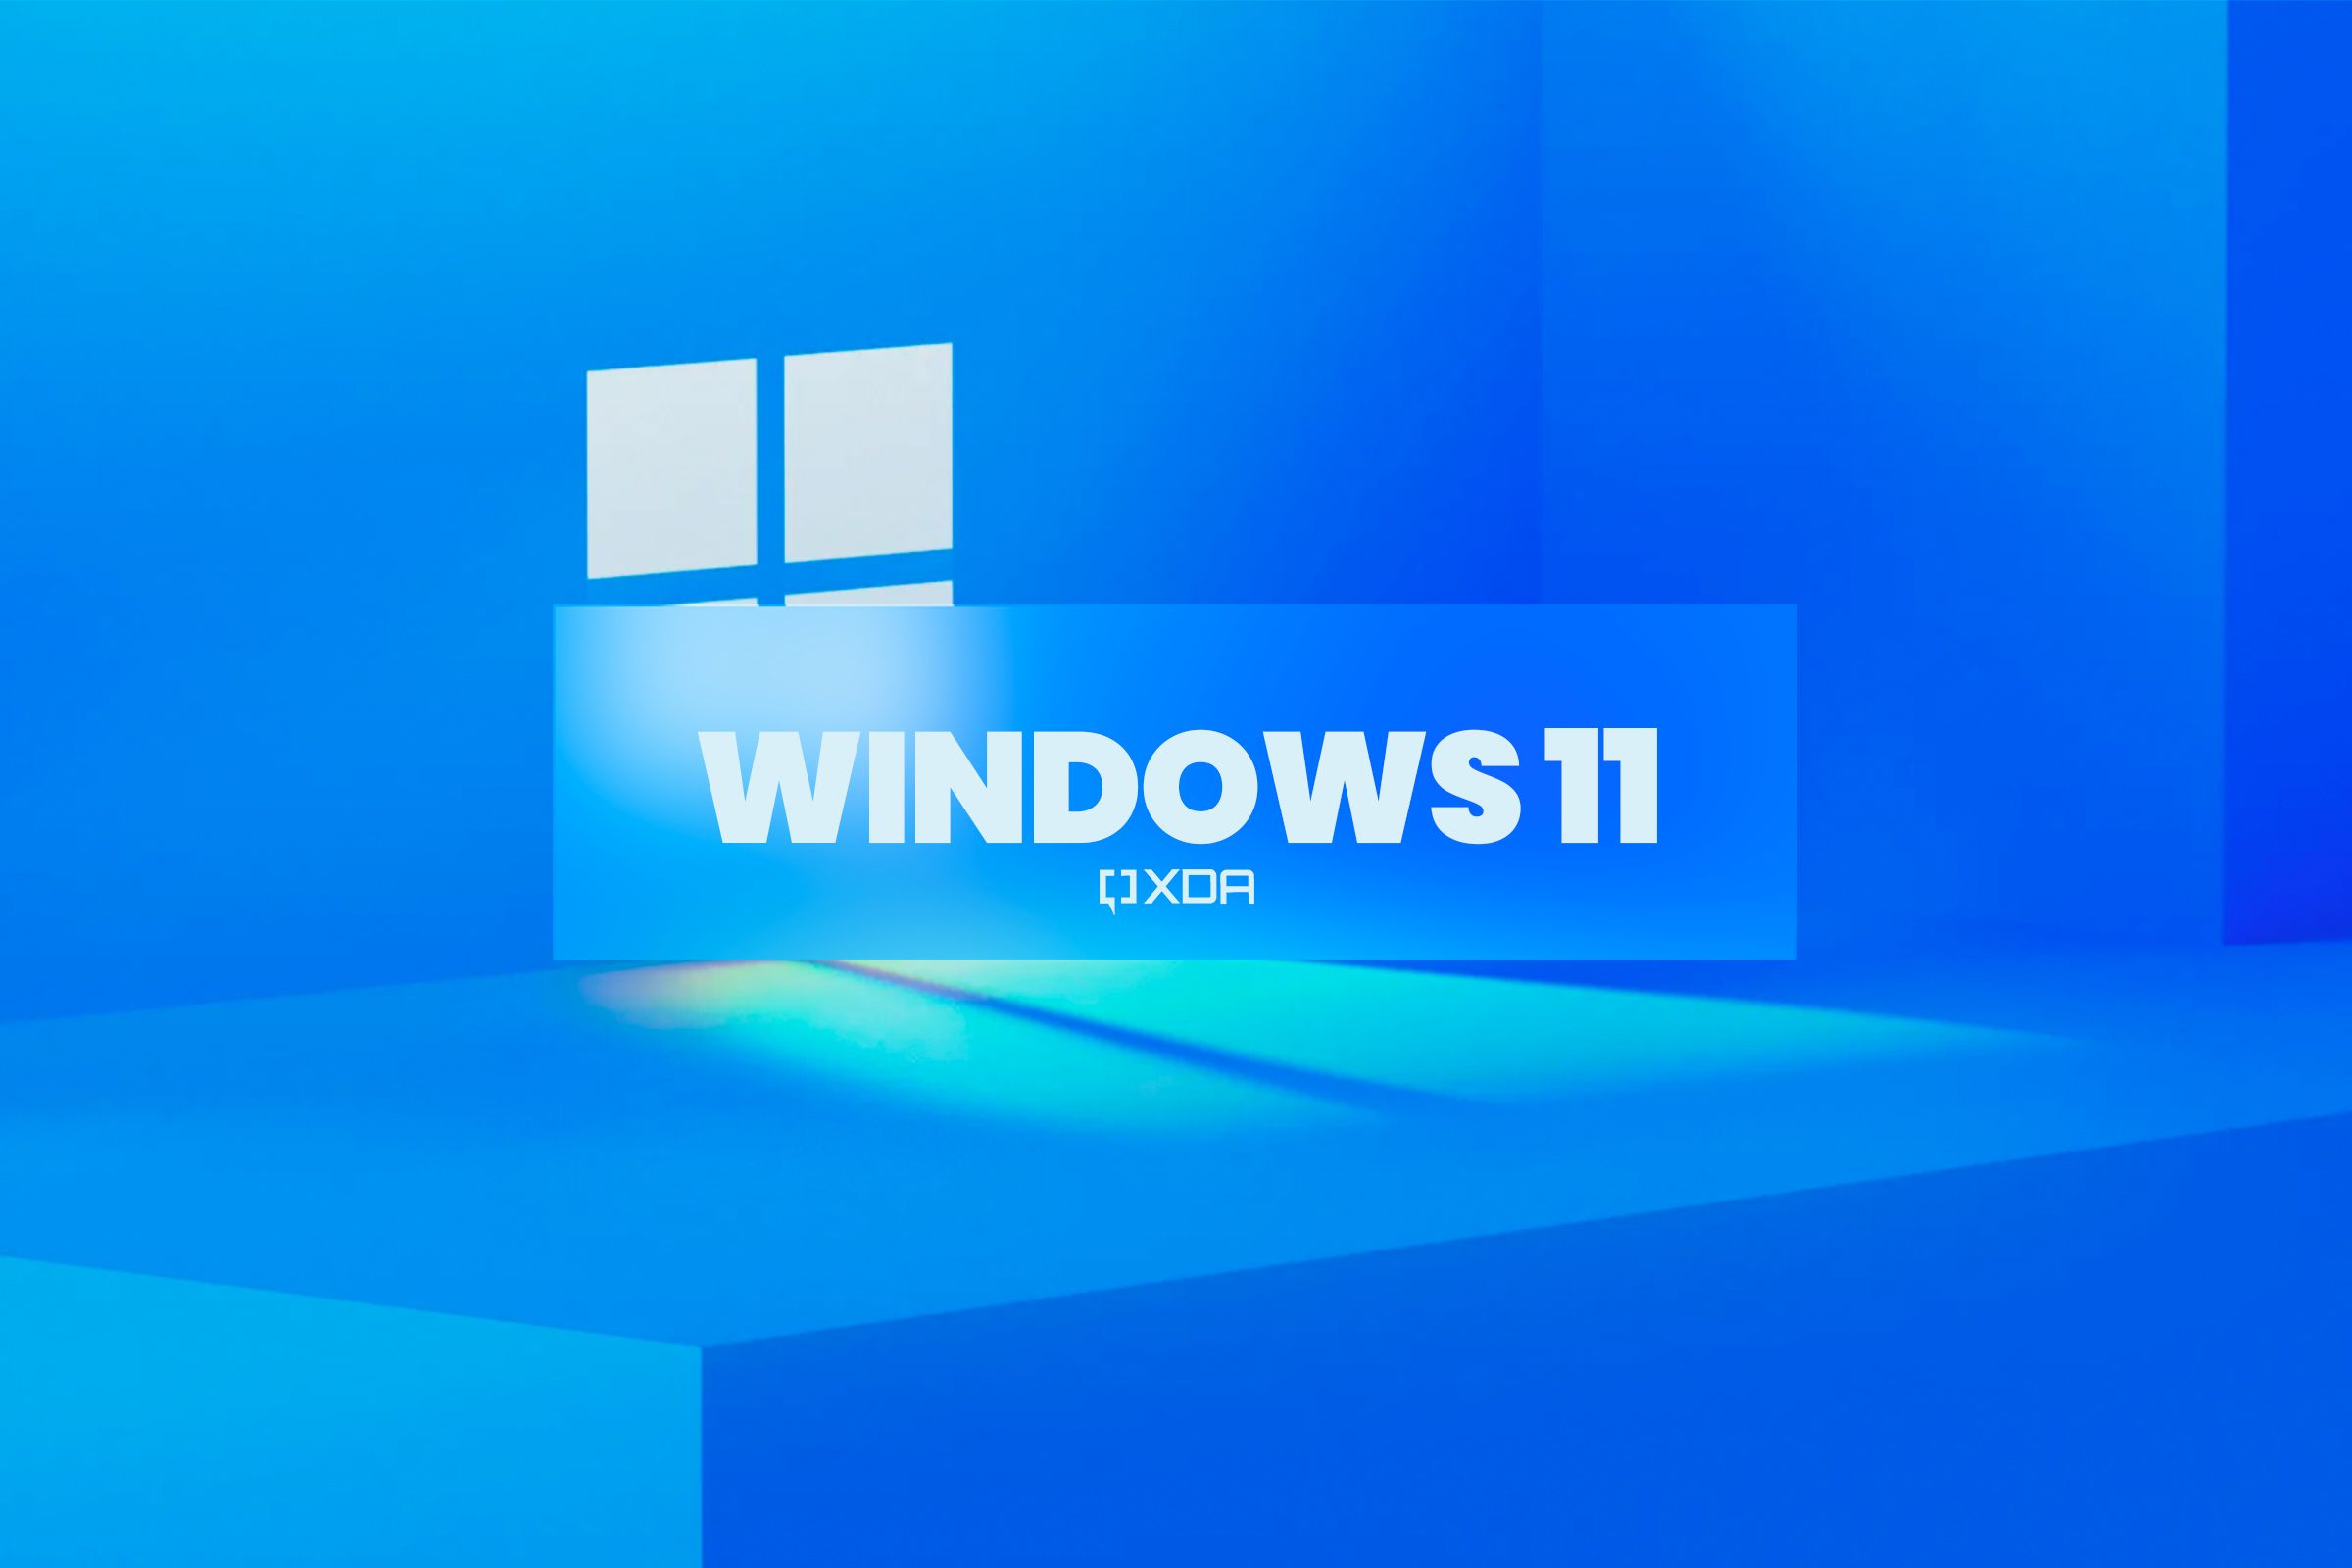 Windows 11 hero page